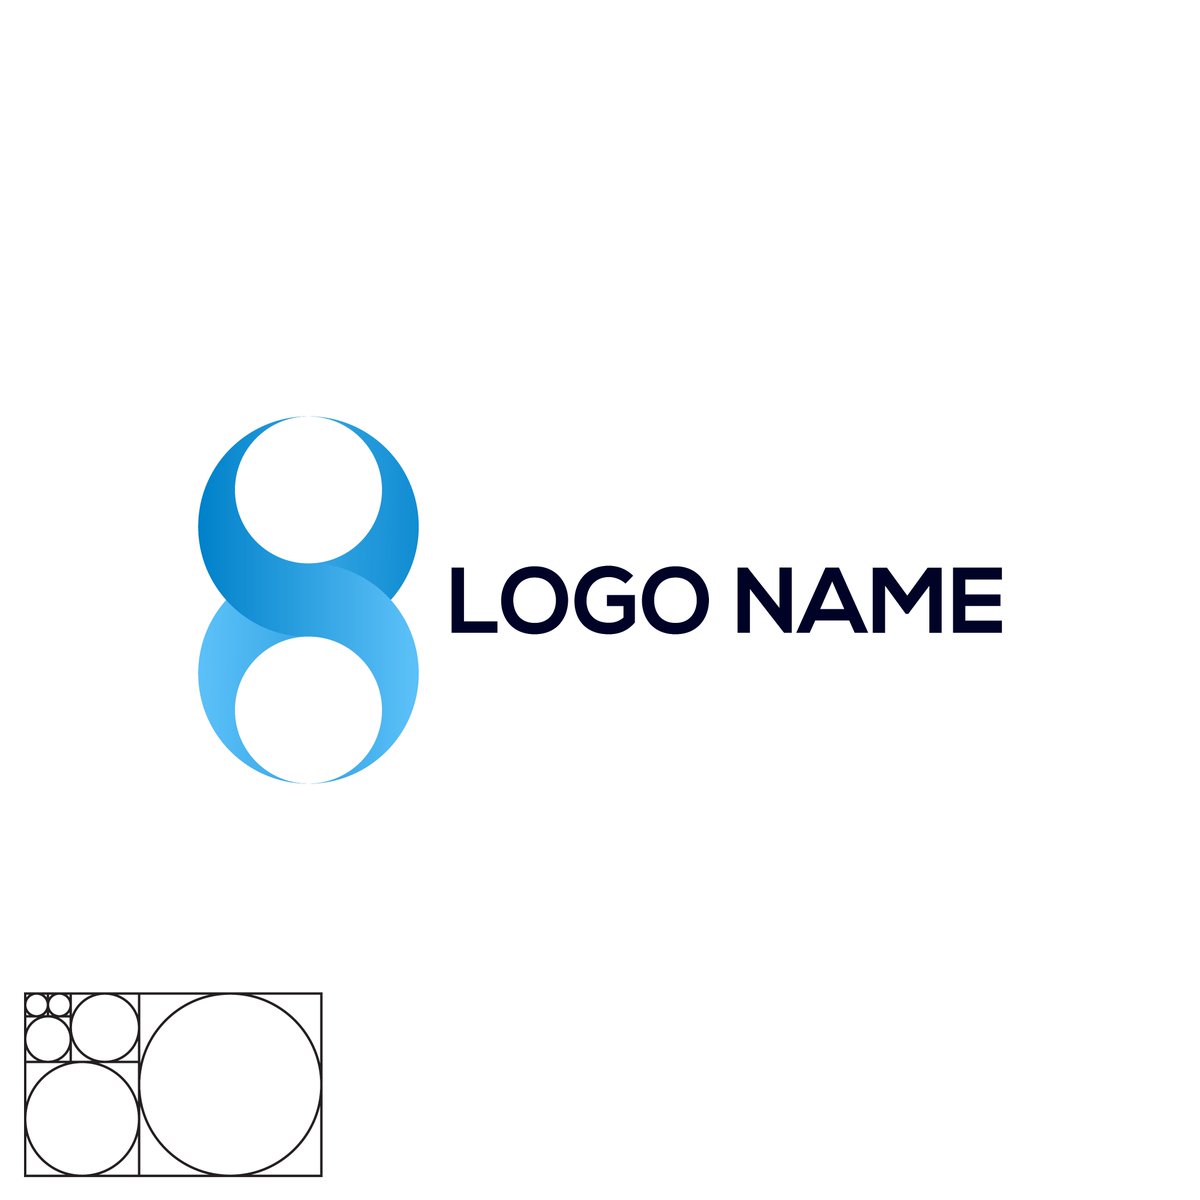 #GoldenRAtio
#LogoDesign 
@everyone